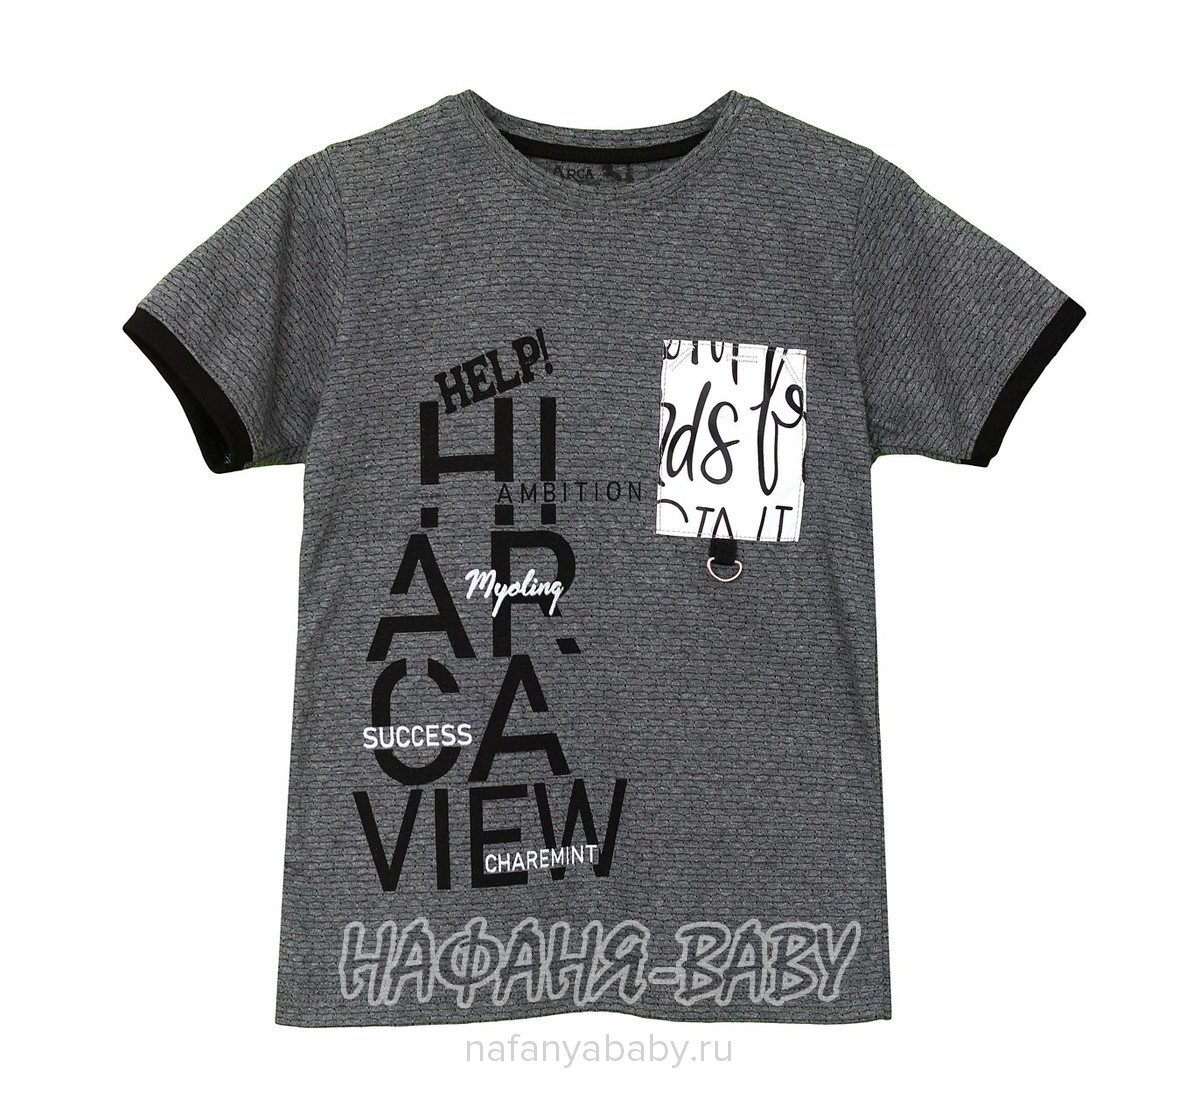 Детская футболка ARCA, купить в интернет магазине Нафаня. арт: 6014-2.